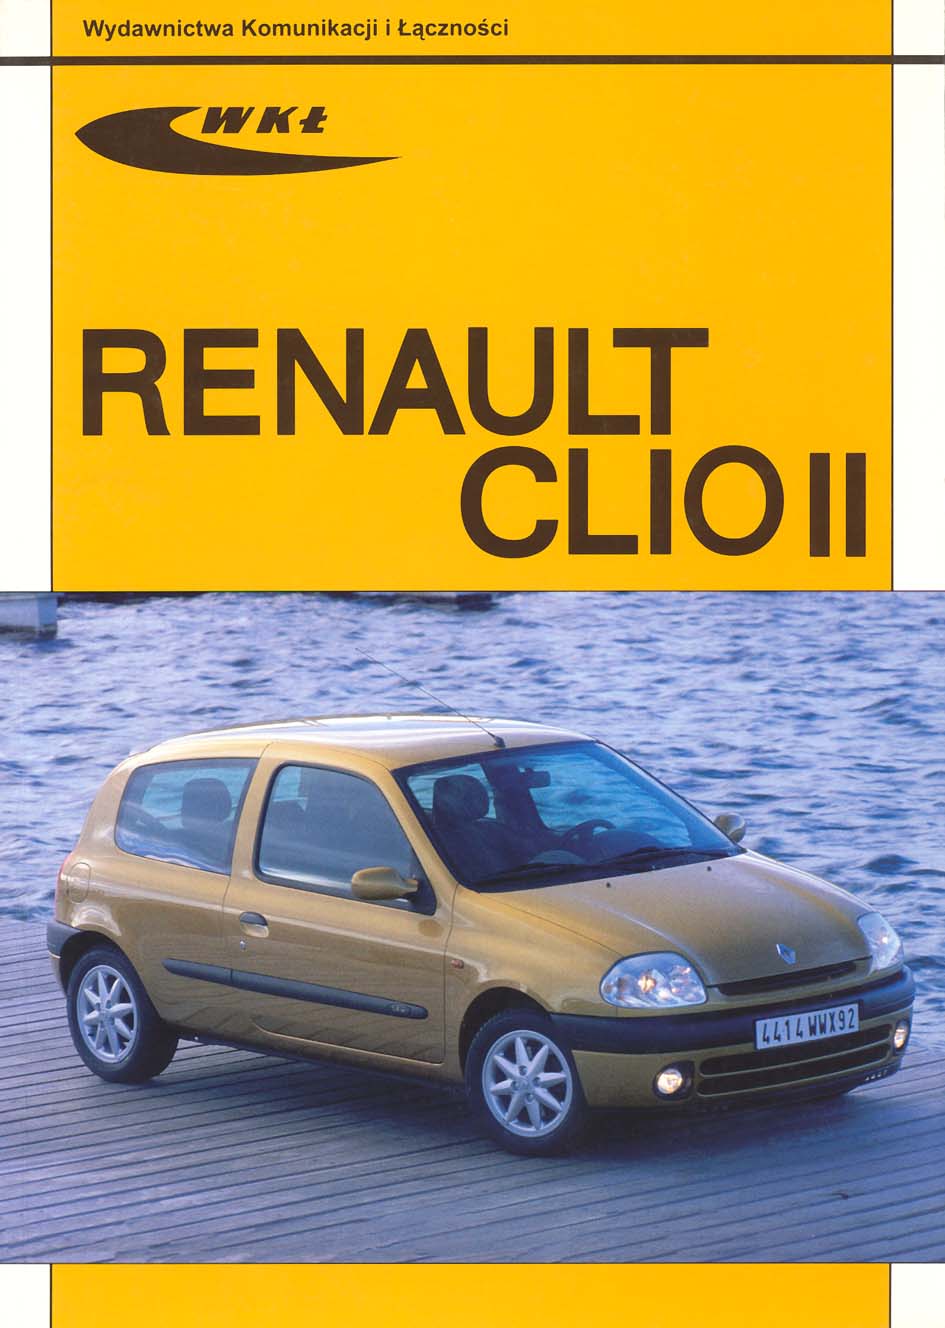 Książka Renault Clio II modele 19982001 Wydawnictwa